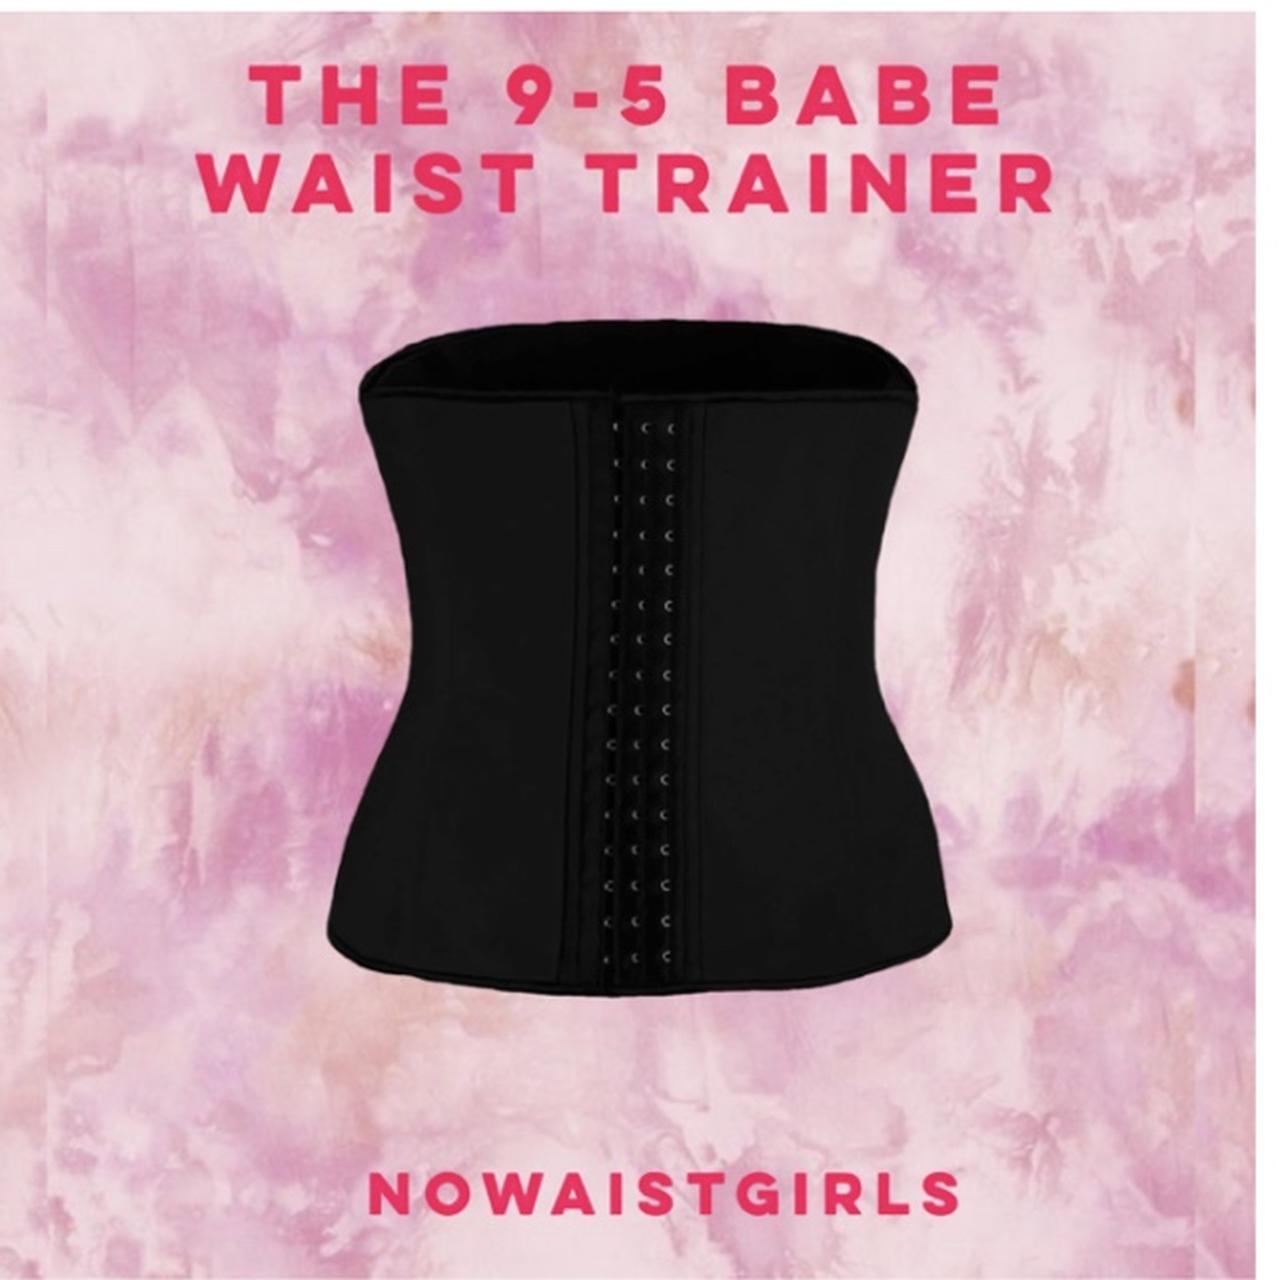 No waist girls 9-5 babe waist trainer in a size M. - Depop